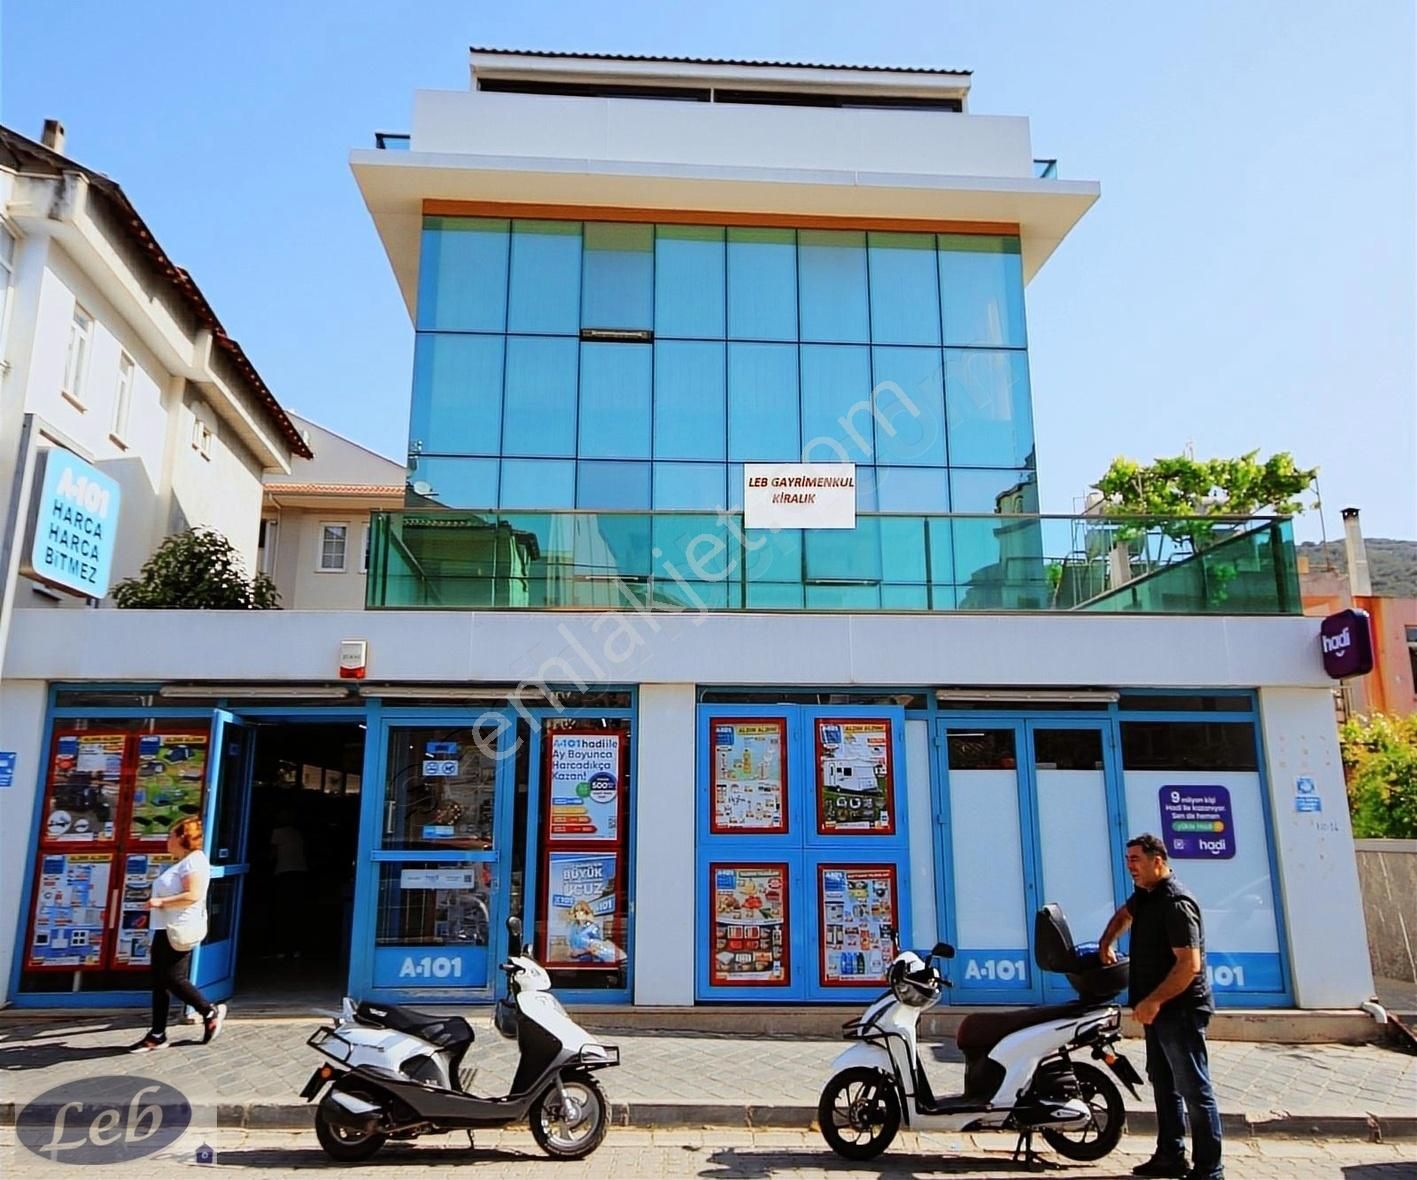 Fethiye Tuzla Kiralık Ofis Fethiye'de sahile yakın kiralık 1+1 ofis